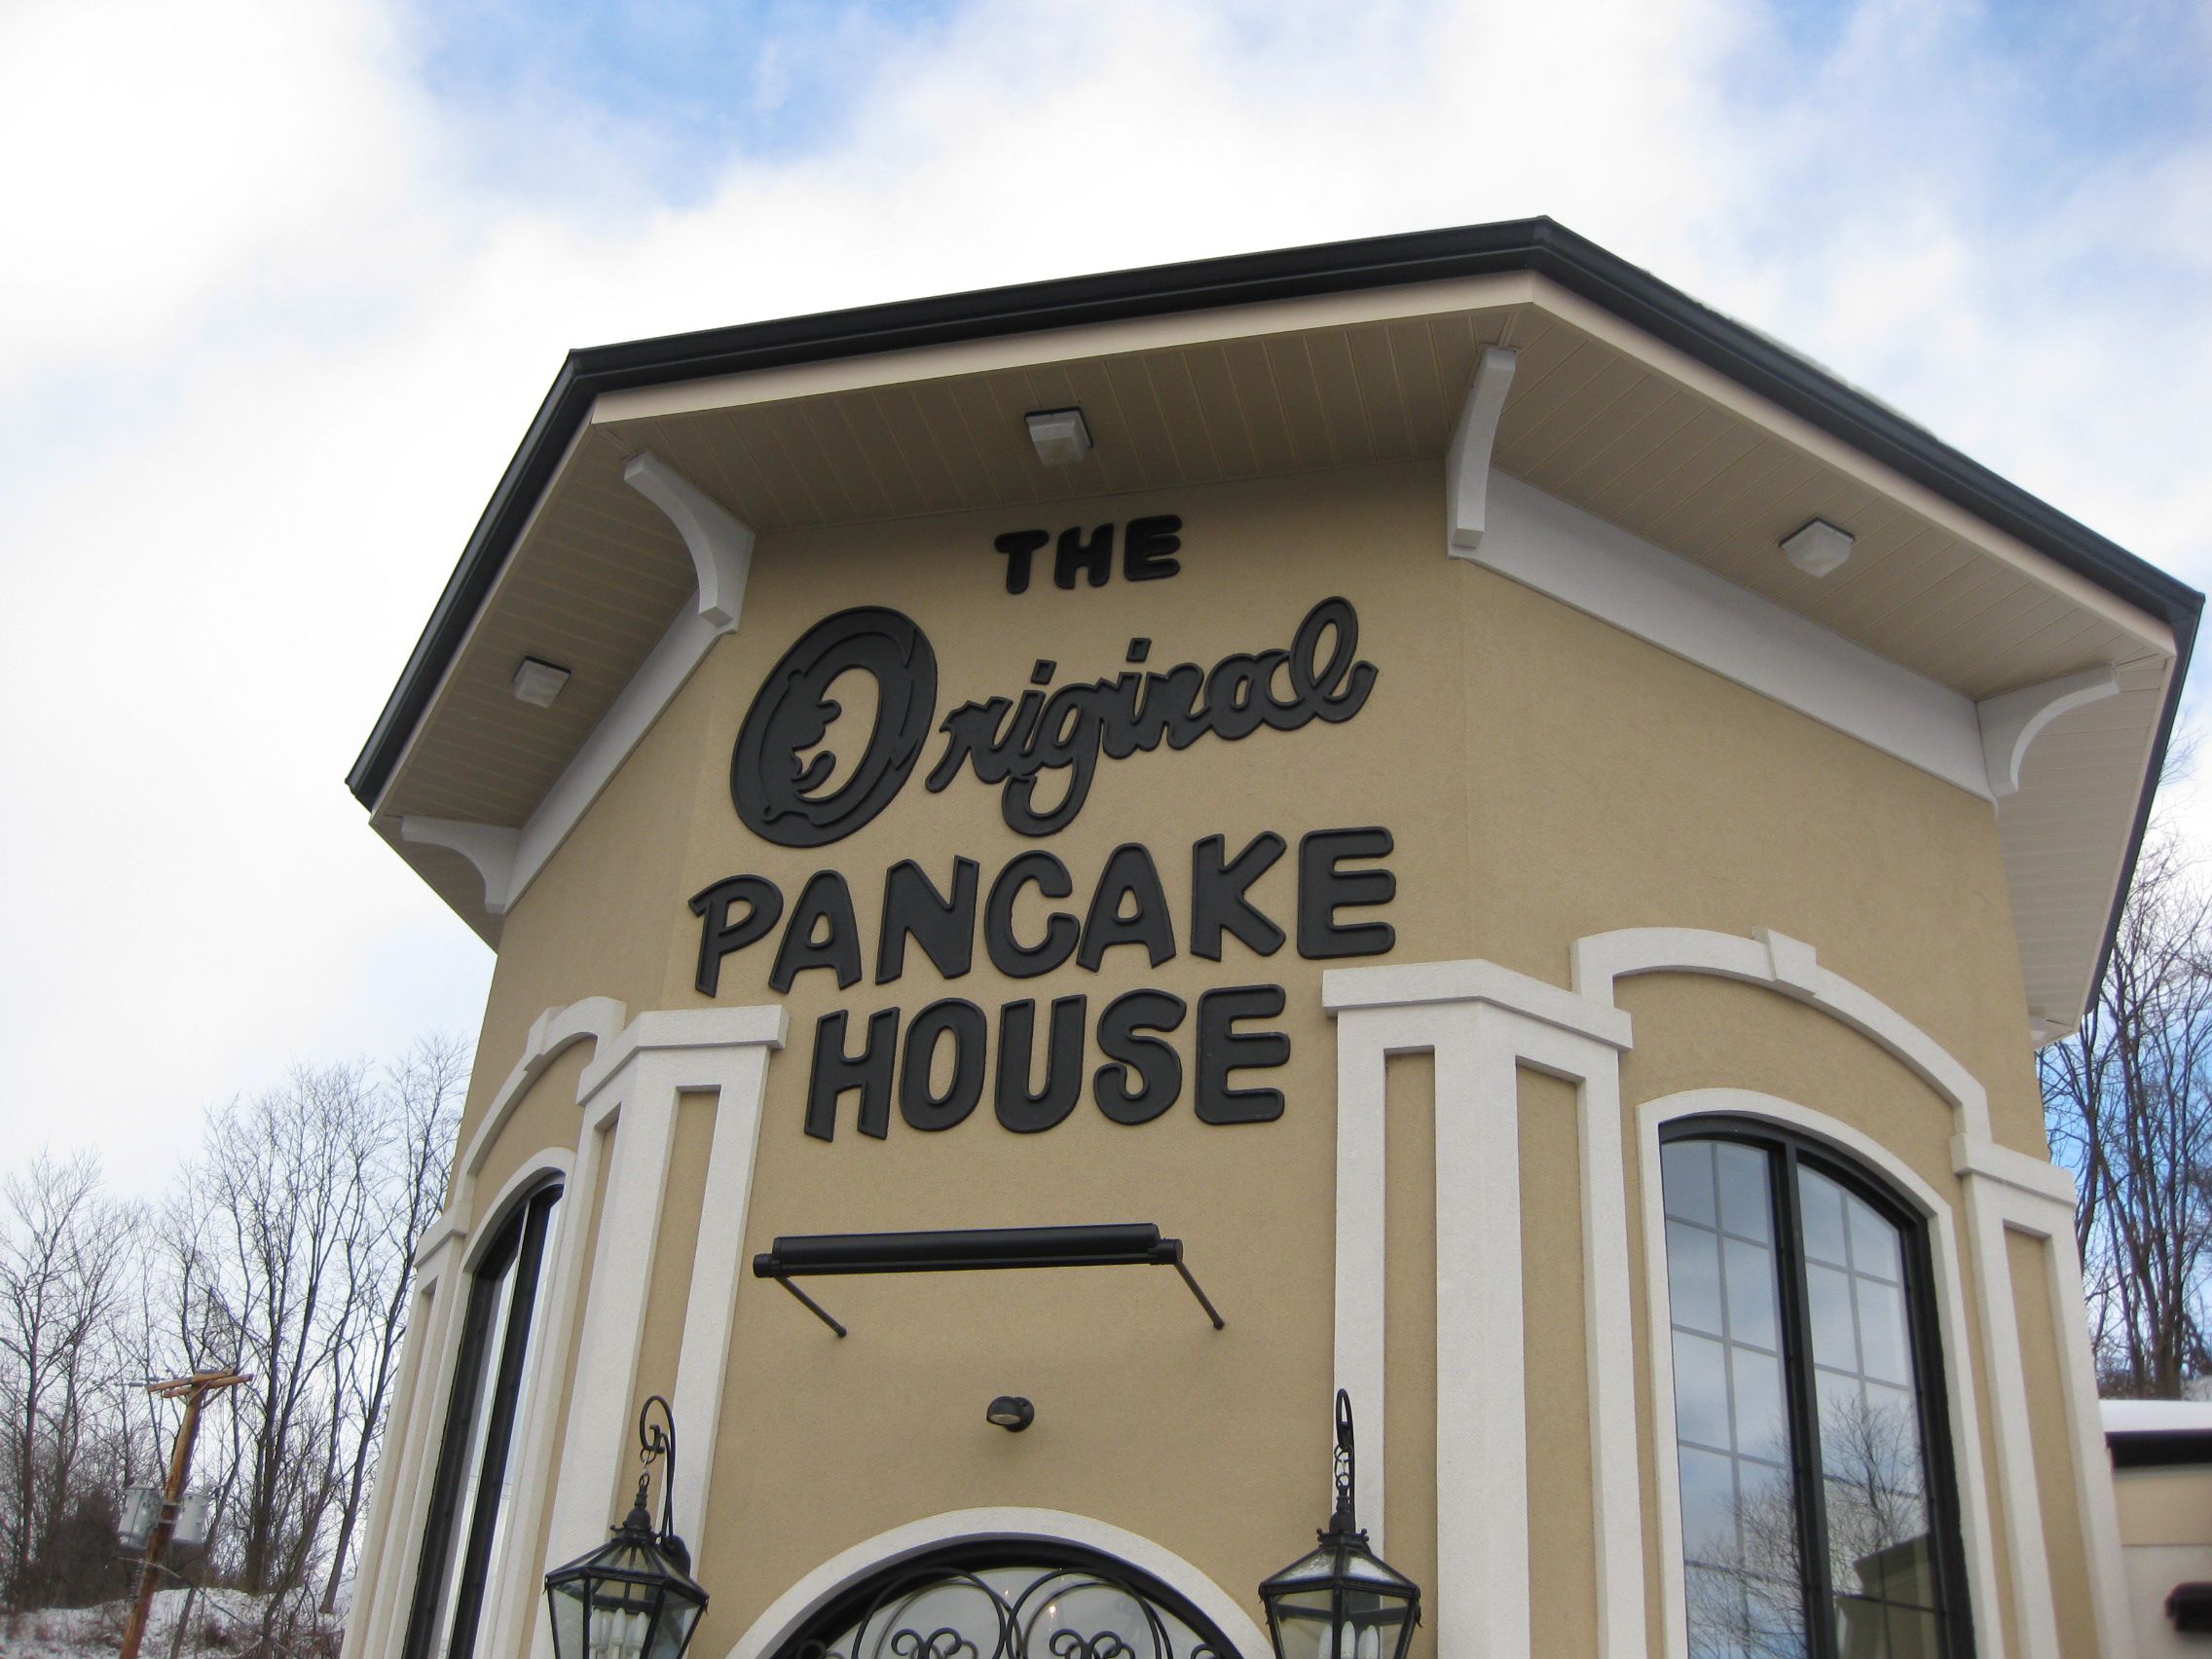 ホノルル・アナモアナで絶対行くべきパンケーキ店「The Original Pancake House」